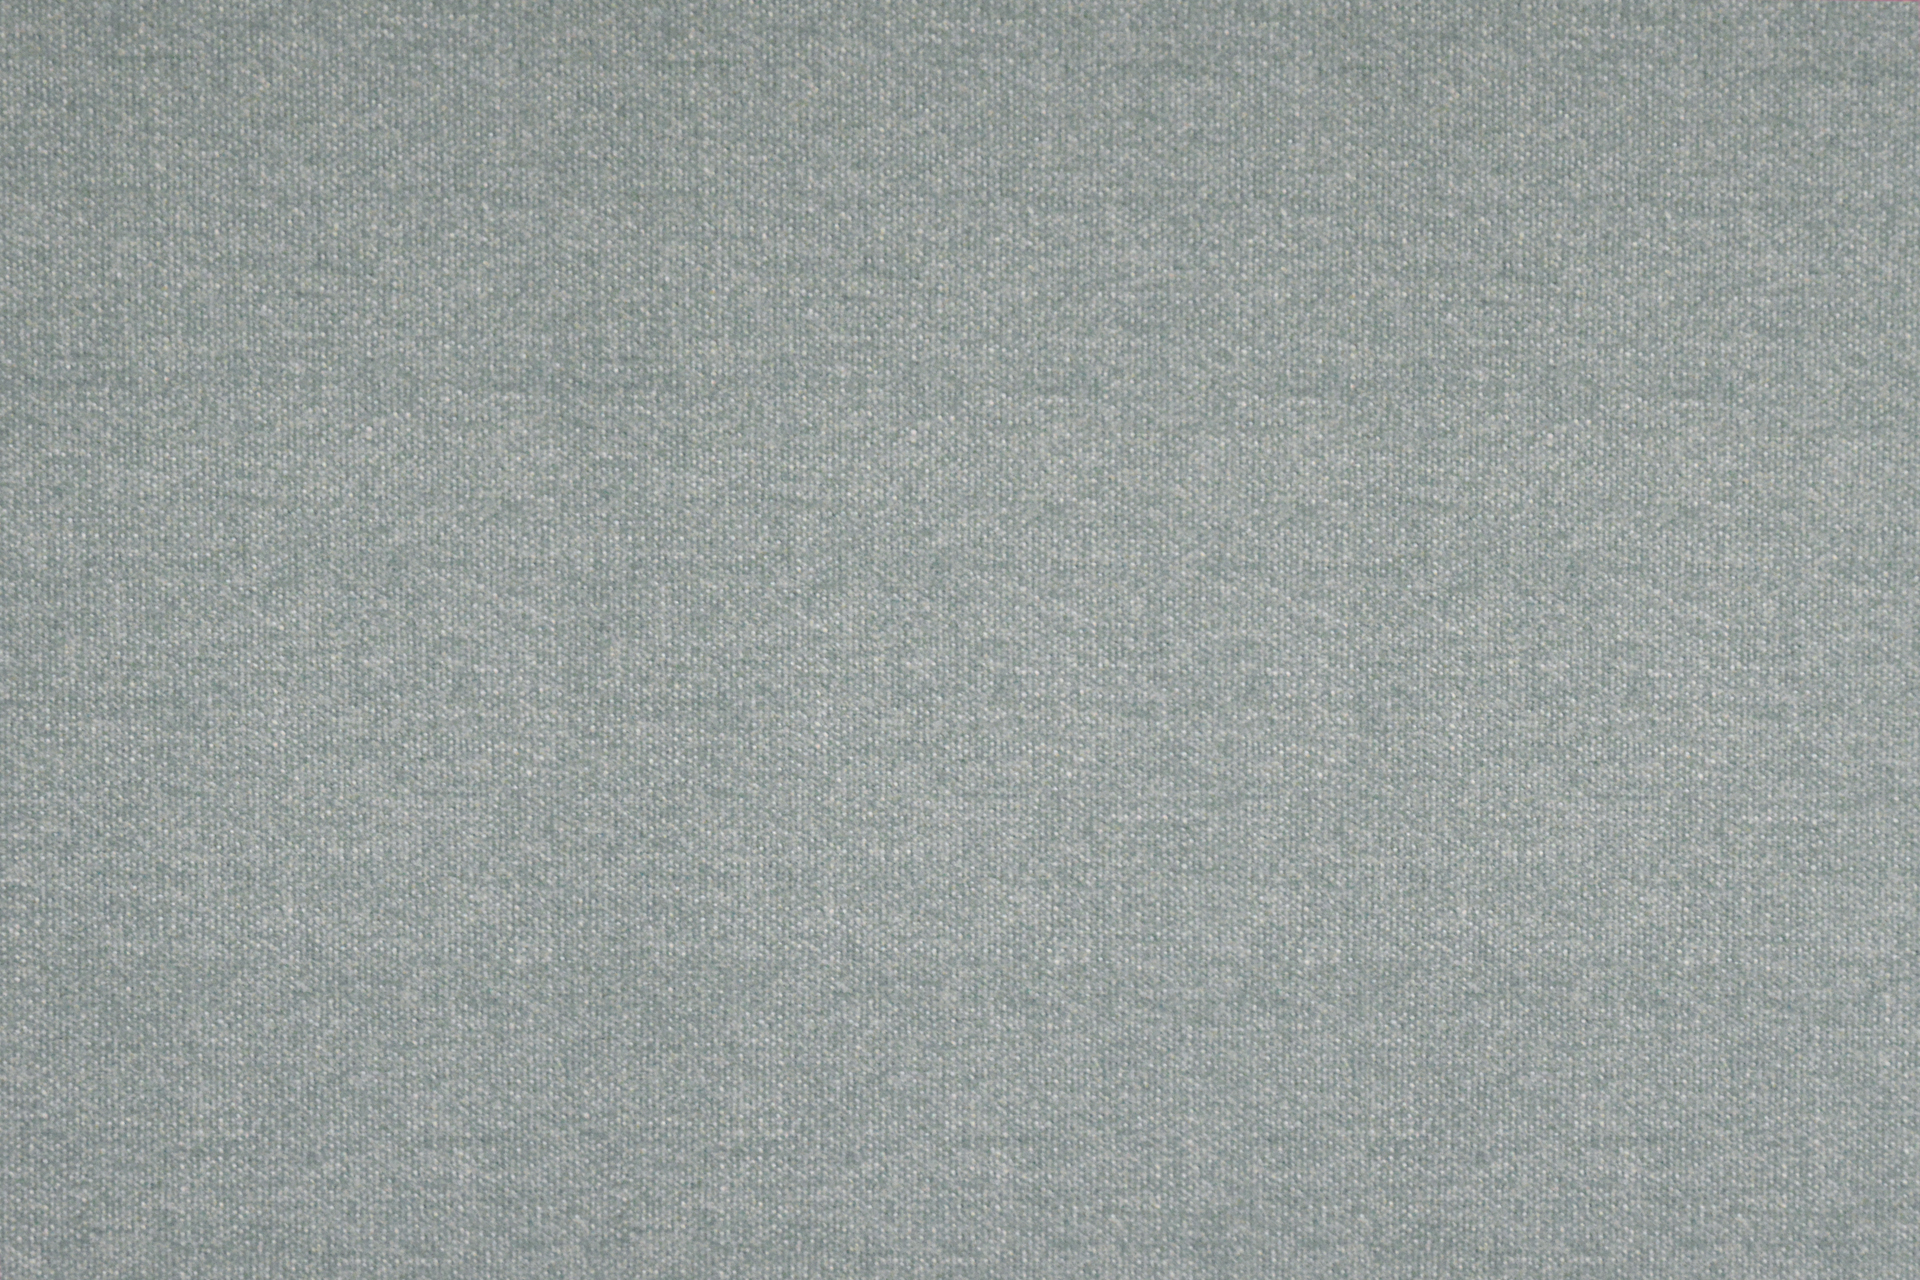 Bogota tissu ameublement faux uni Aquaclean anti-tâche et lavable de Casal, pour chaise, fauteuil, canapé et rideaux, vendu par la rime des matieres, bon plan tissu